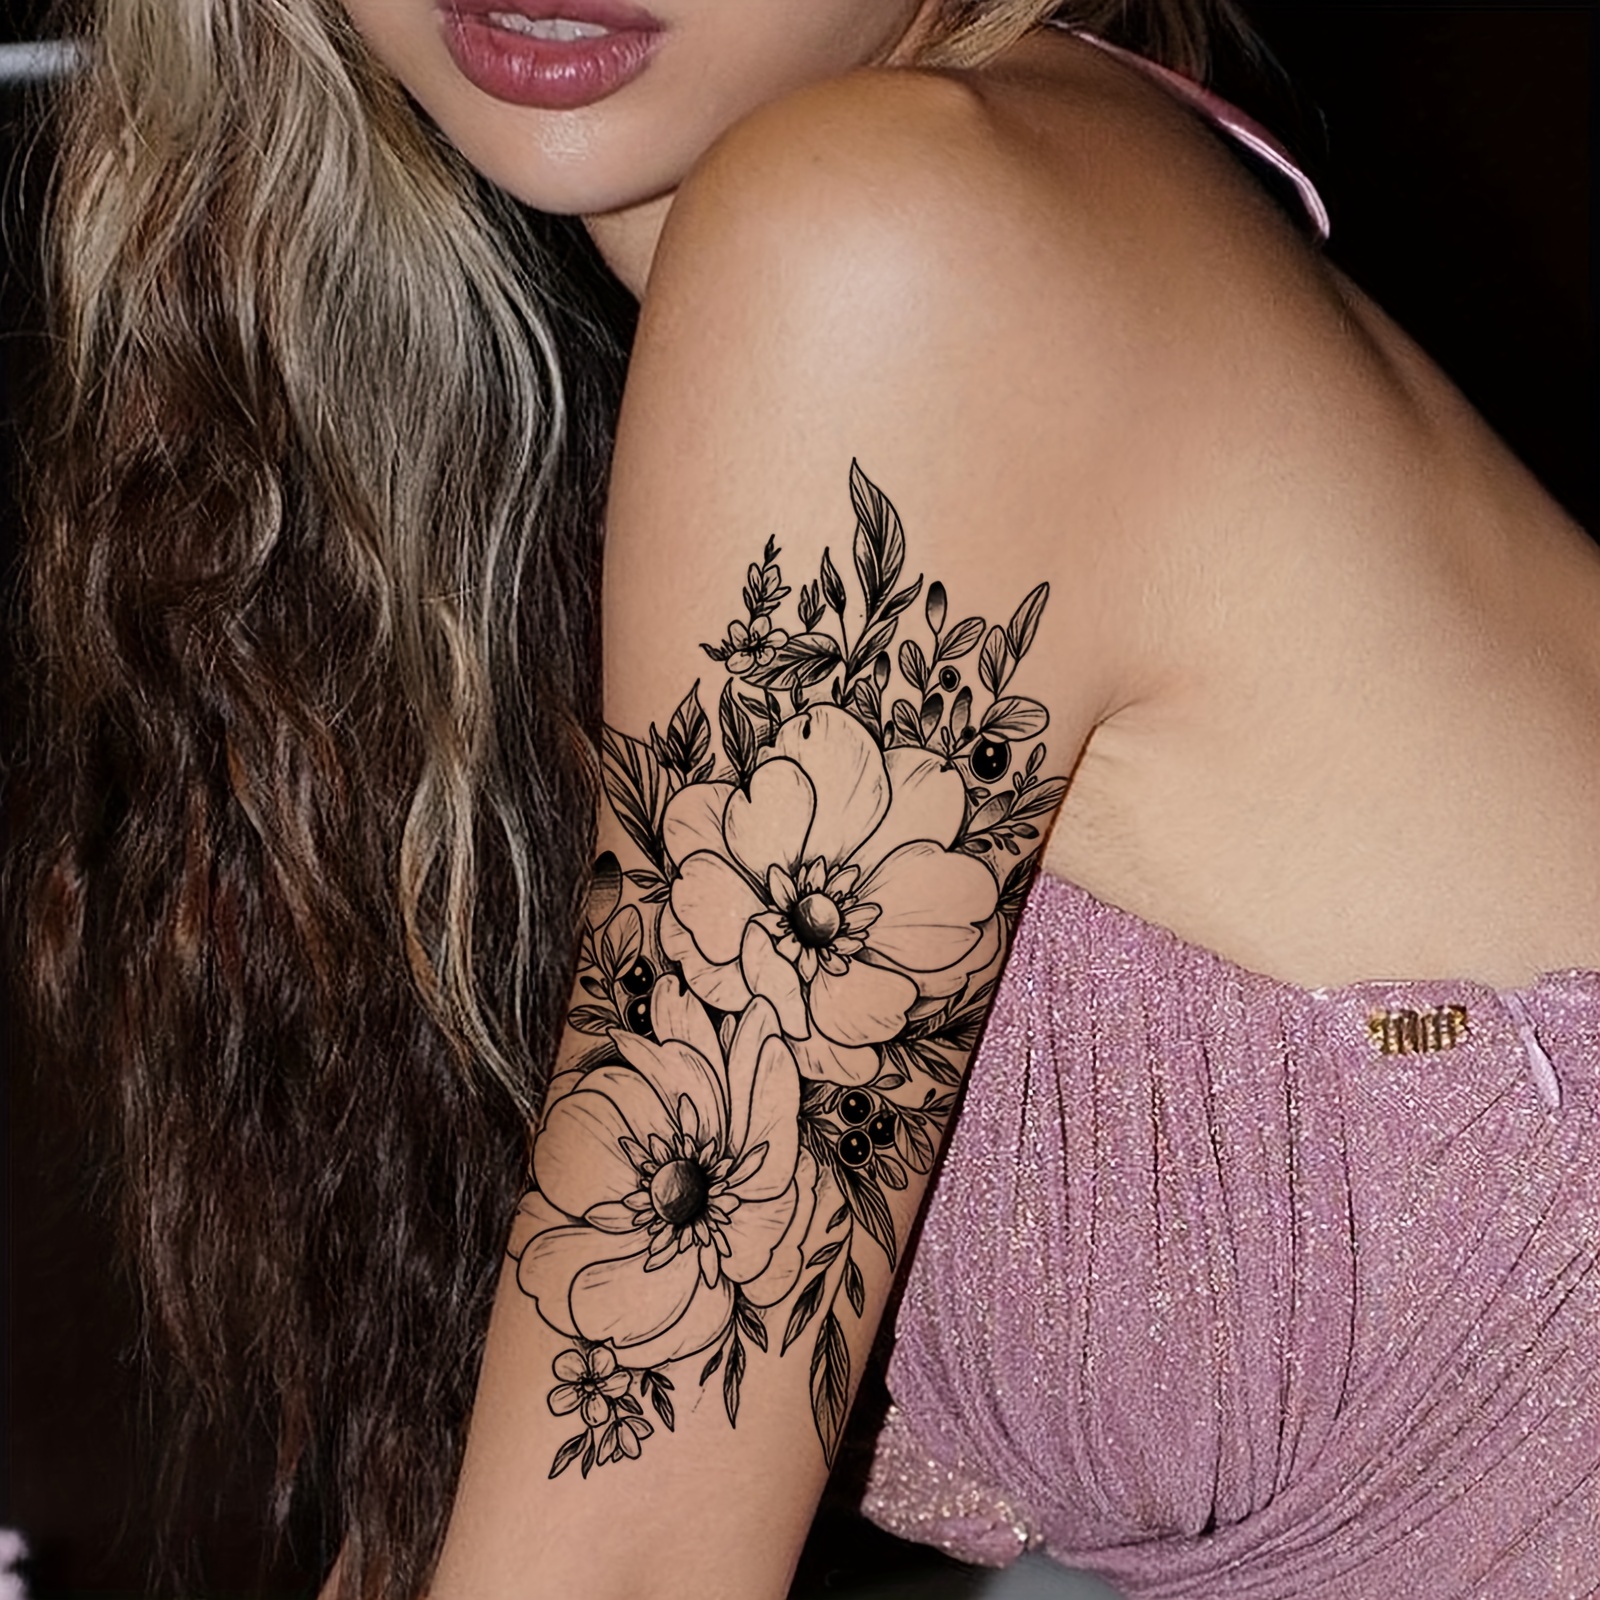 rose tattoos for women on back